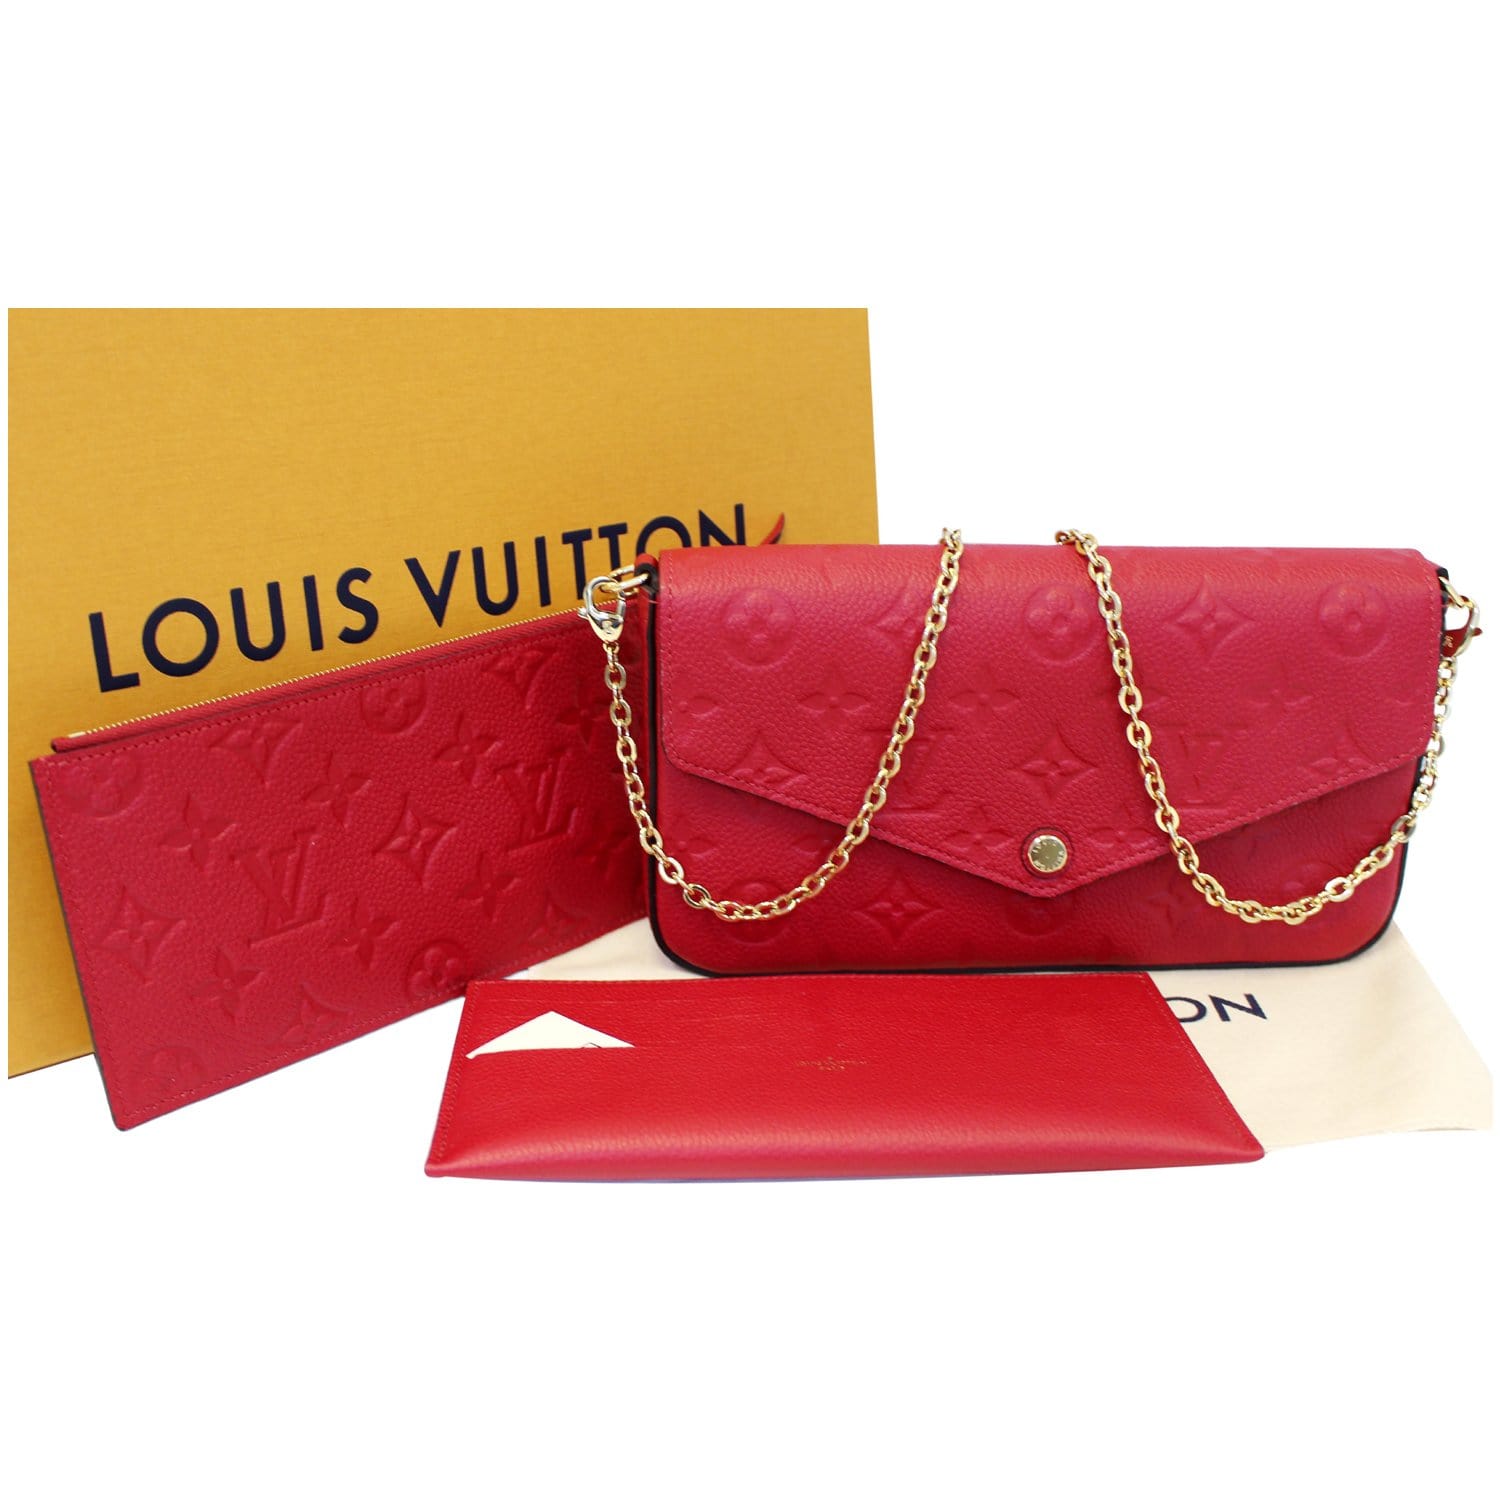 LOUIS VUITTON Pochette Felicie Monogram Empreinte Leather Chain Wallet